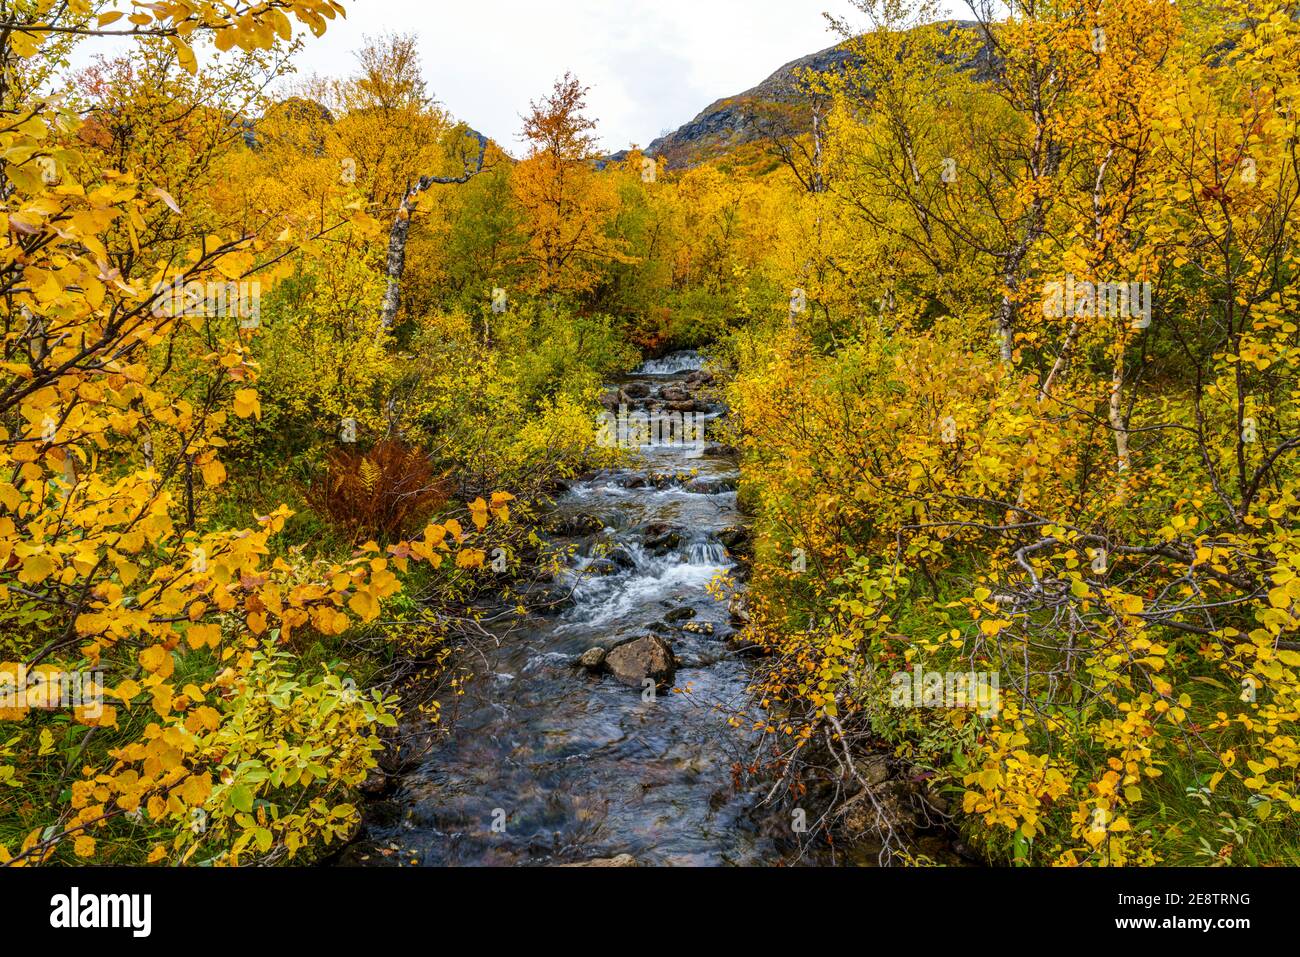 Herbstlandschaft im Nationalpark Stora sjöfallet, bunte Birken und Berge, Nationalpark Stora sjöfallet, Schwedisch Lappland, Schweden Stockfoto